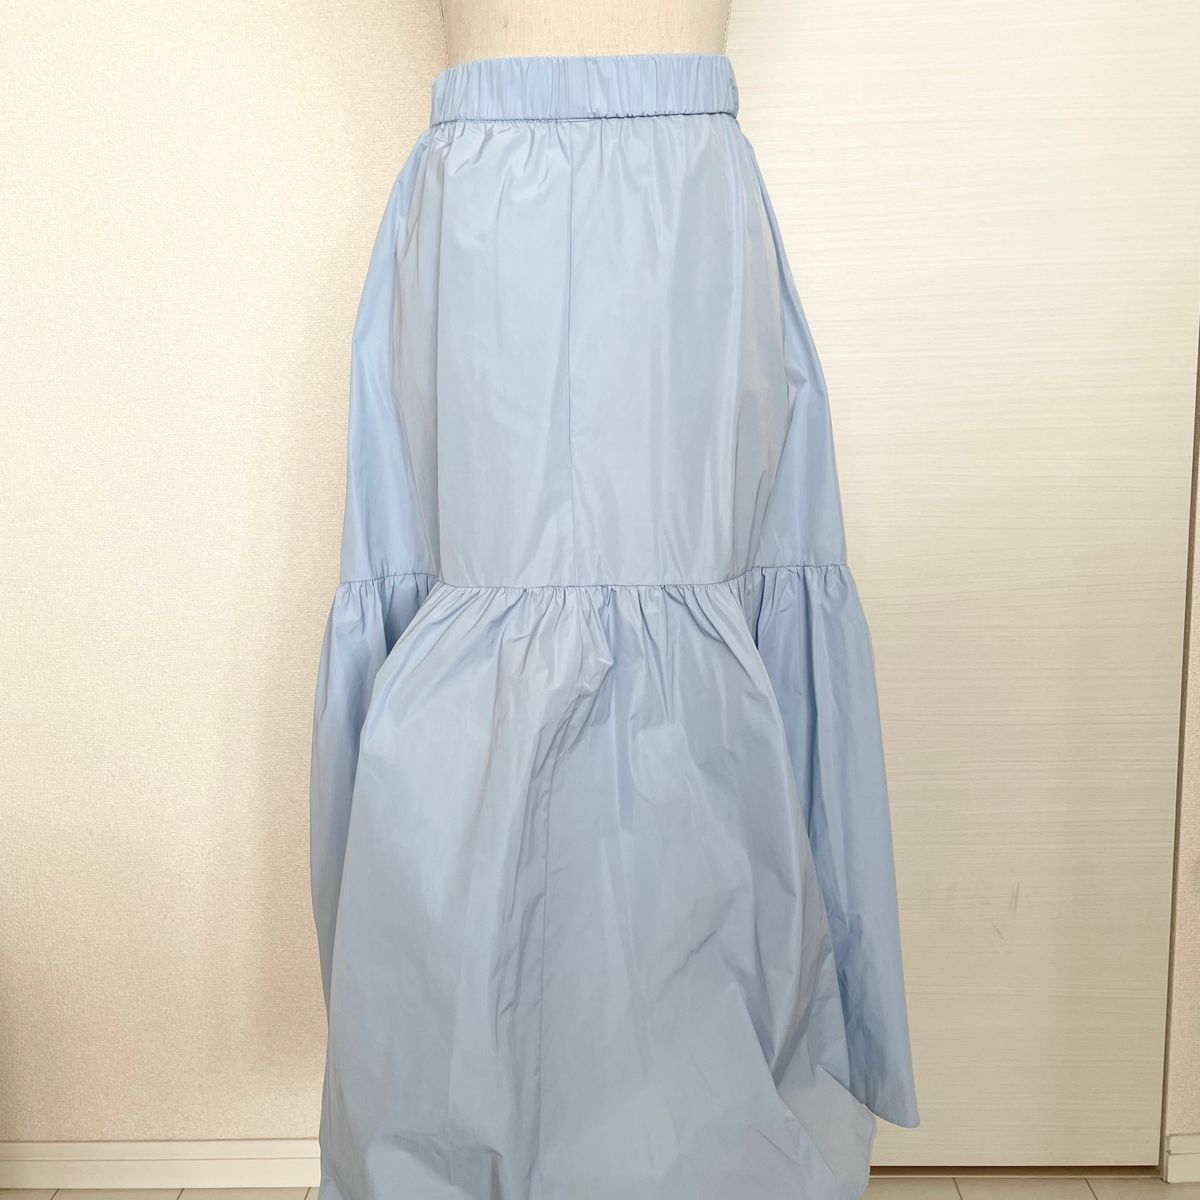 タフタ切り替えスカート | CHLOE MAHAL | 服飾雑貨・アパレルの仕入れ